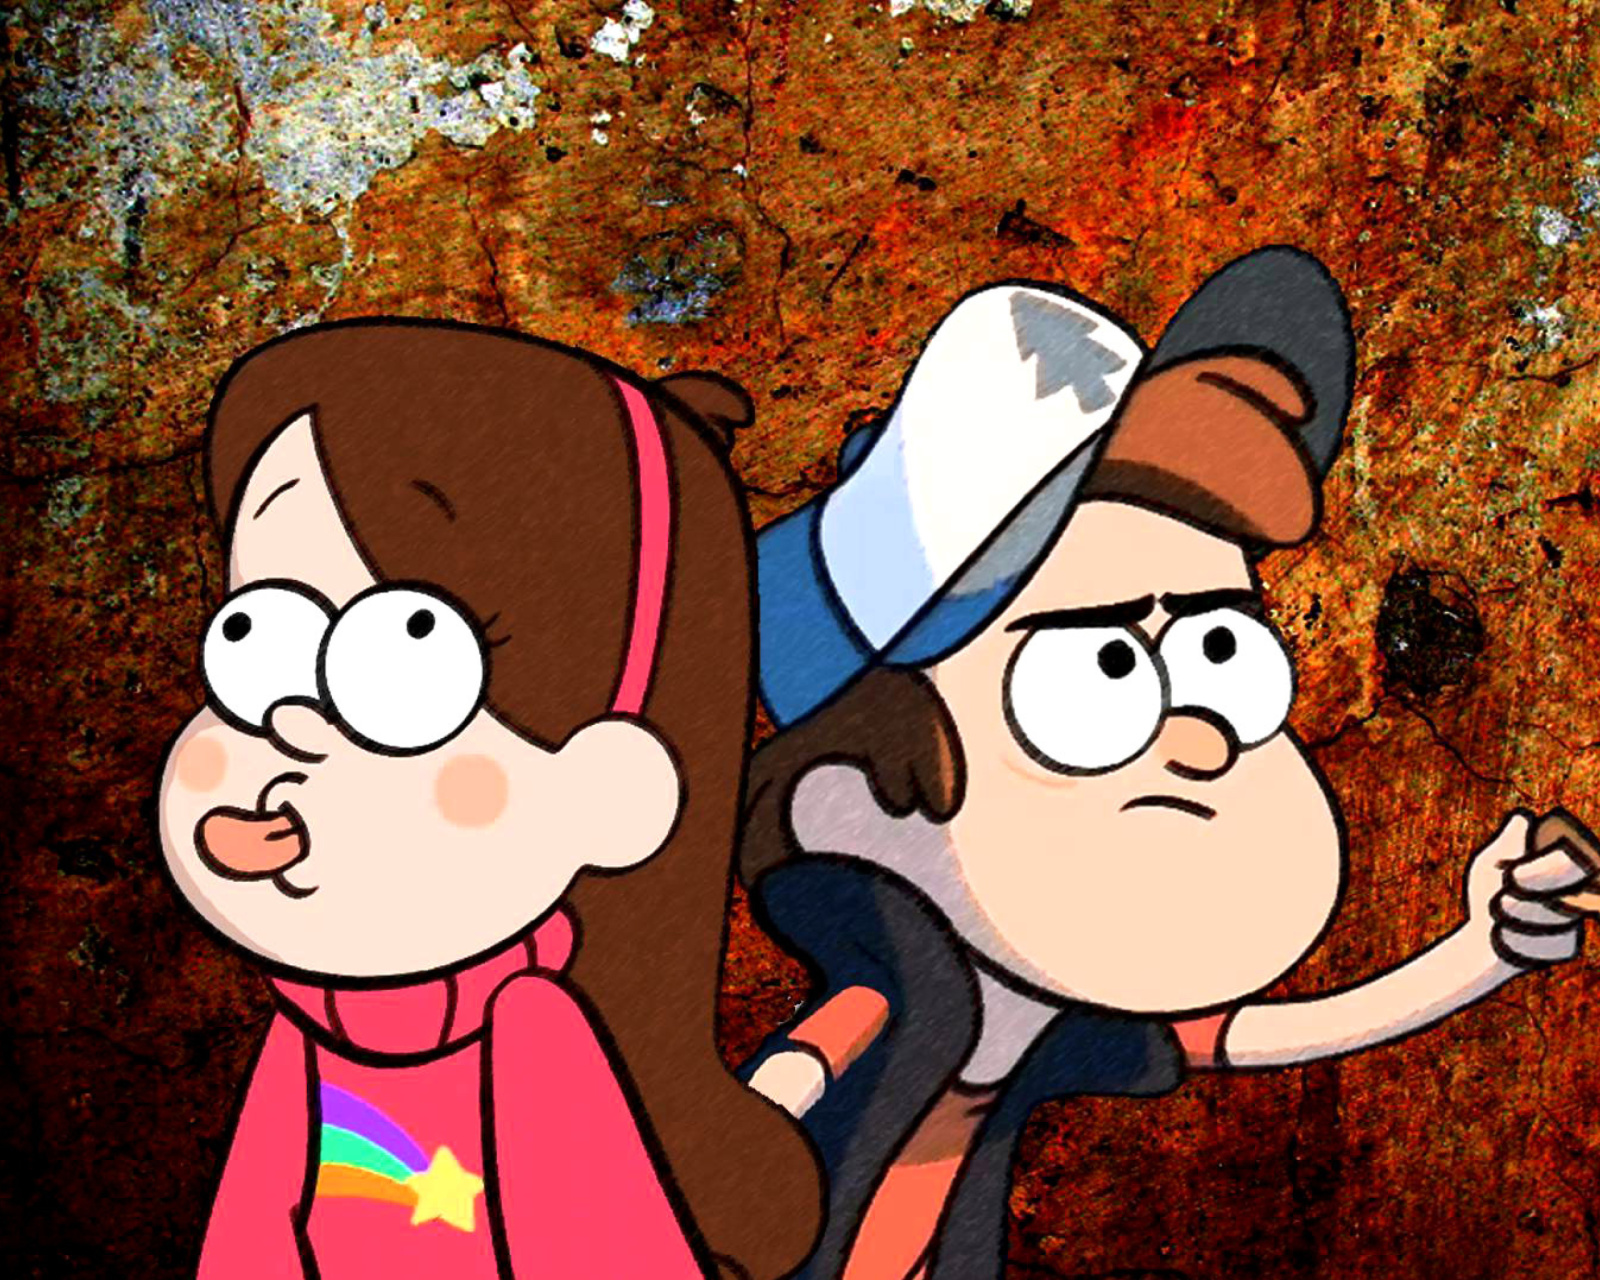 Das Mabel and Dipper in Gravity Falls Wallpaper 1600x1280